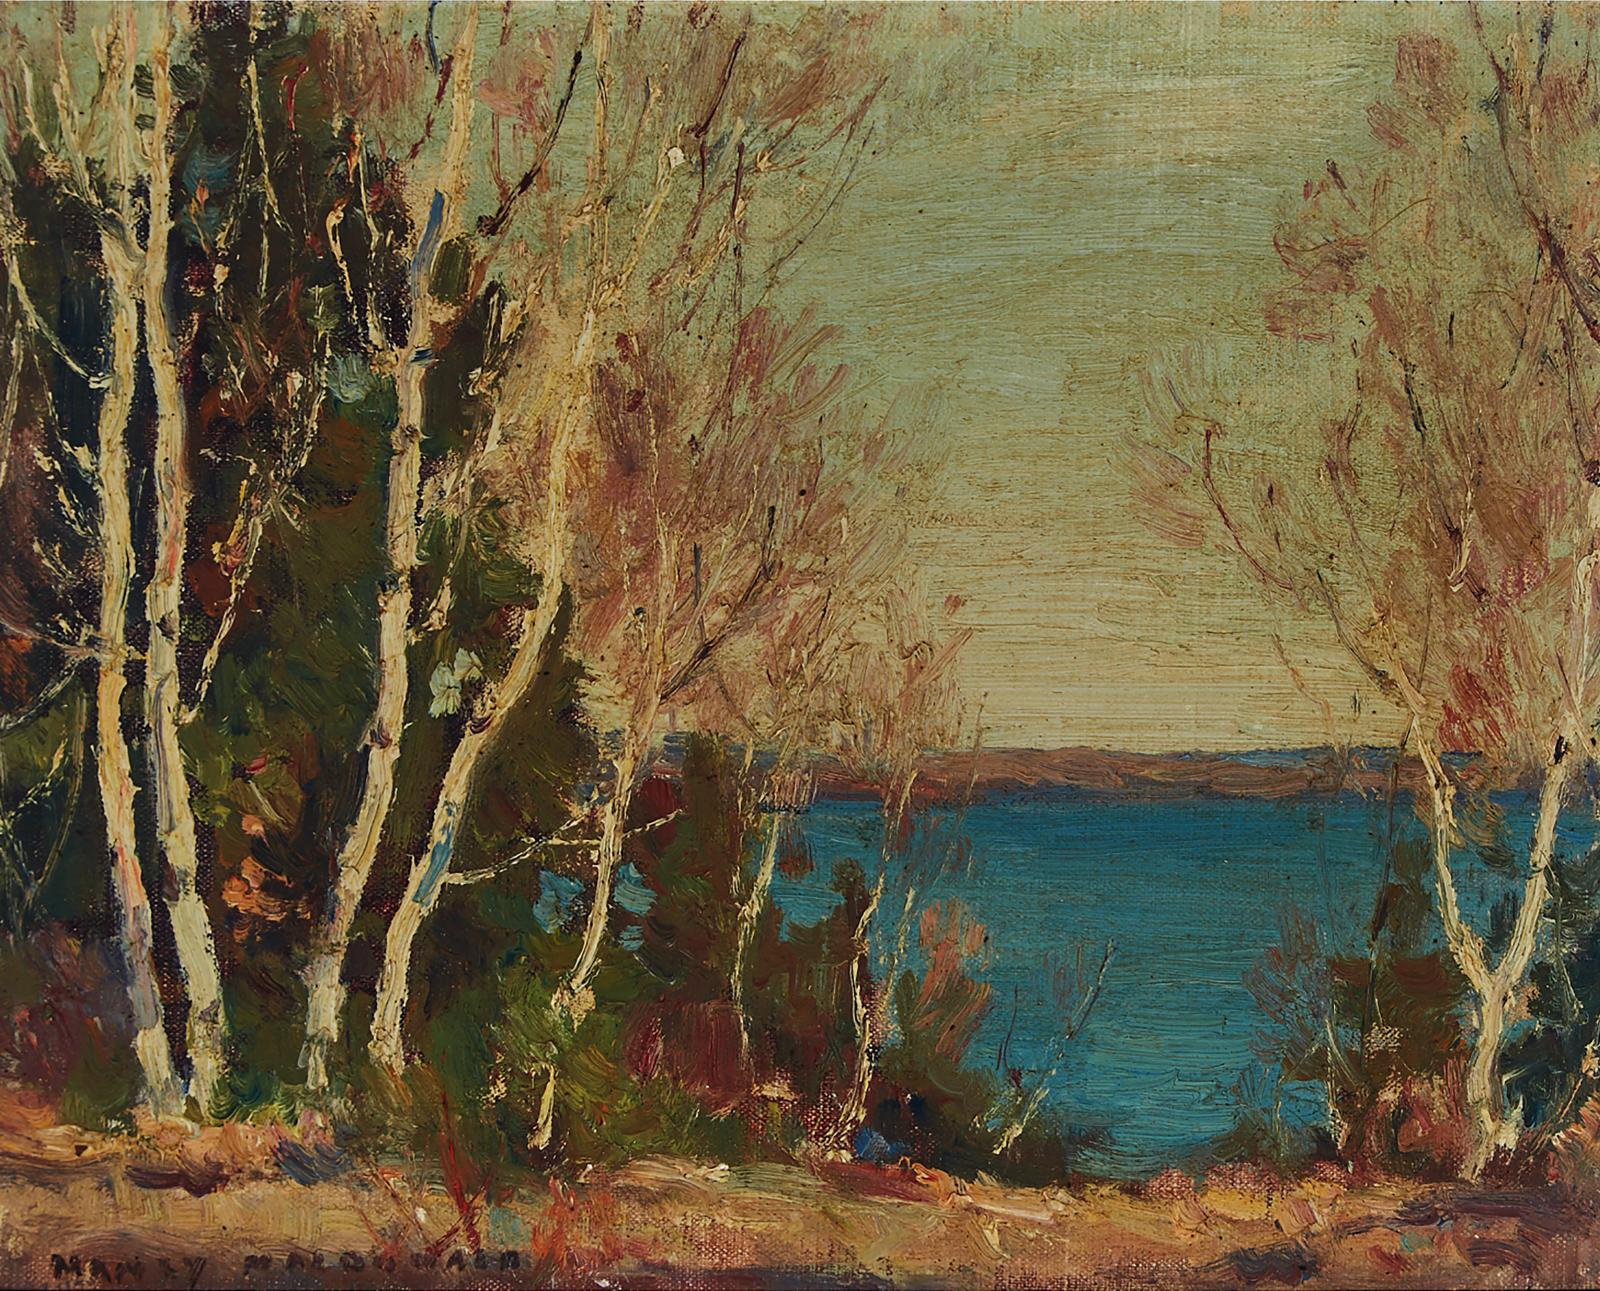 Manly Edward MacDonald (1889-1971) - Autumn Lake Scene